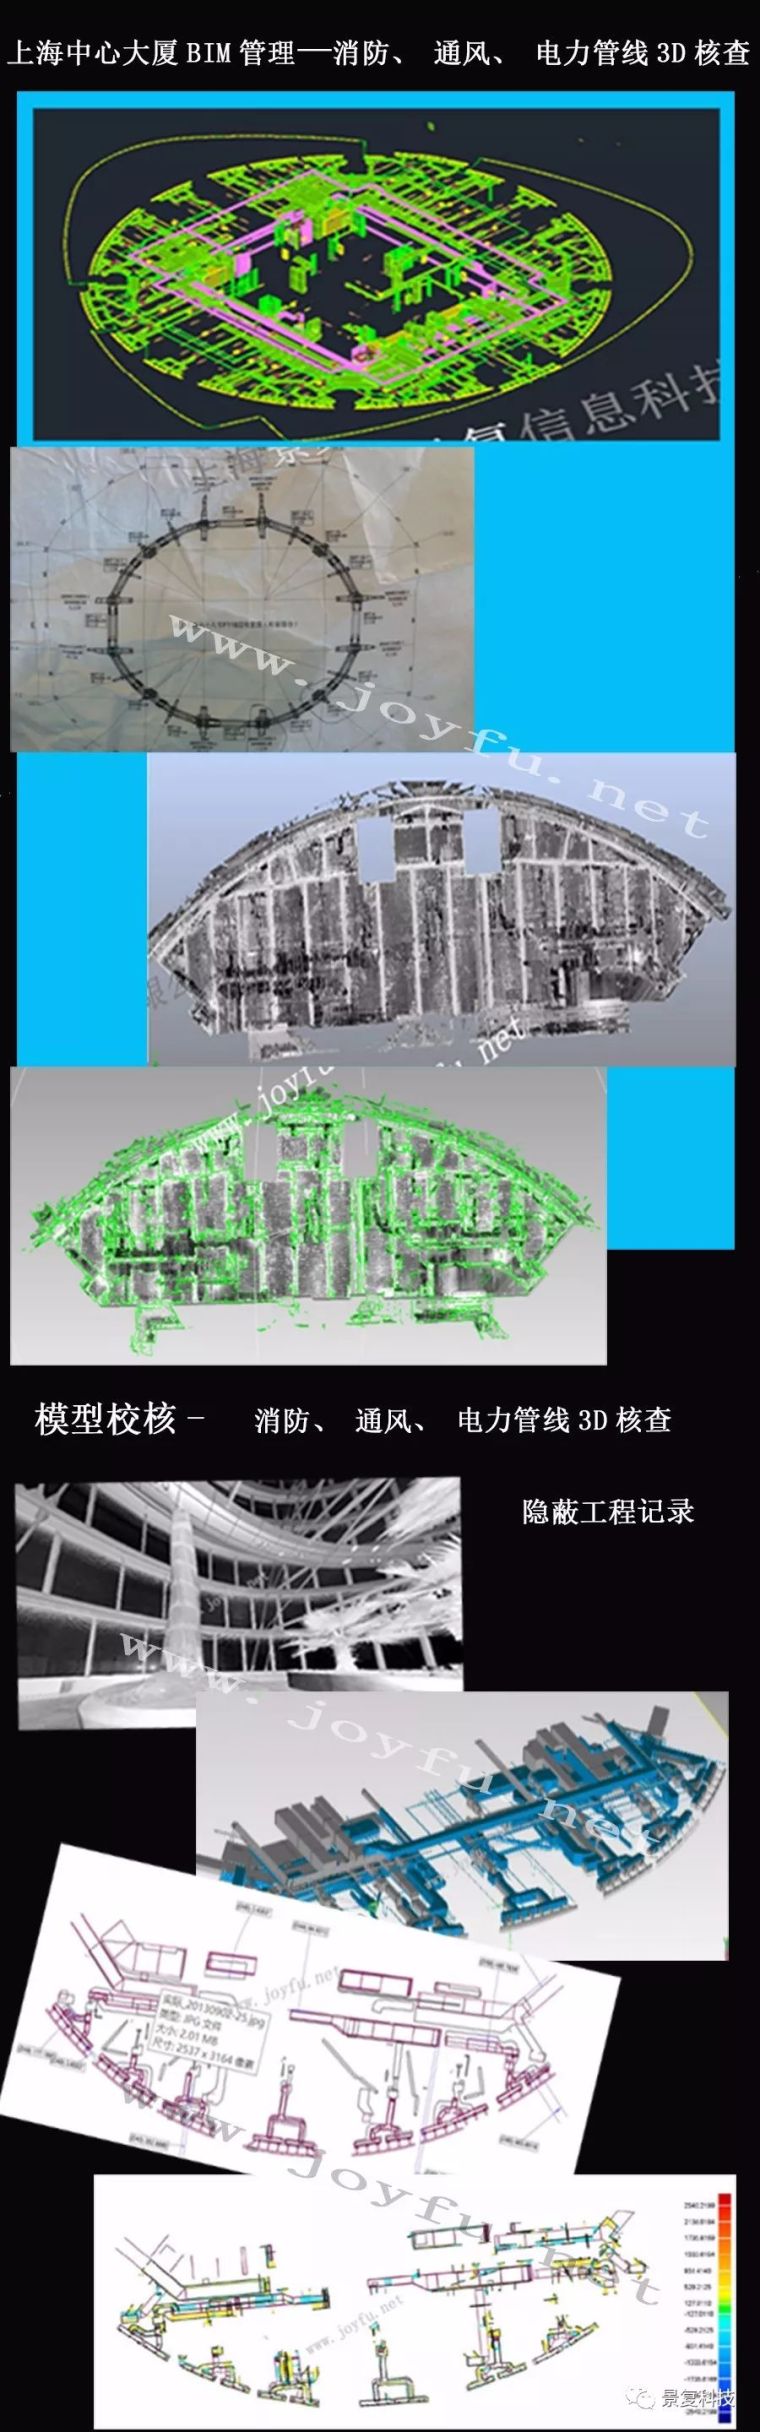 bim二级设备考试模型资料下载-案例——上海中心大厦BIM管理及模型校核